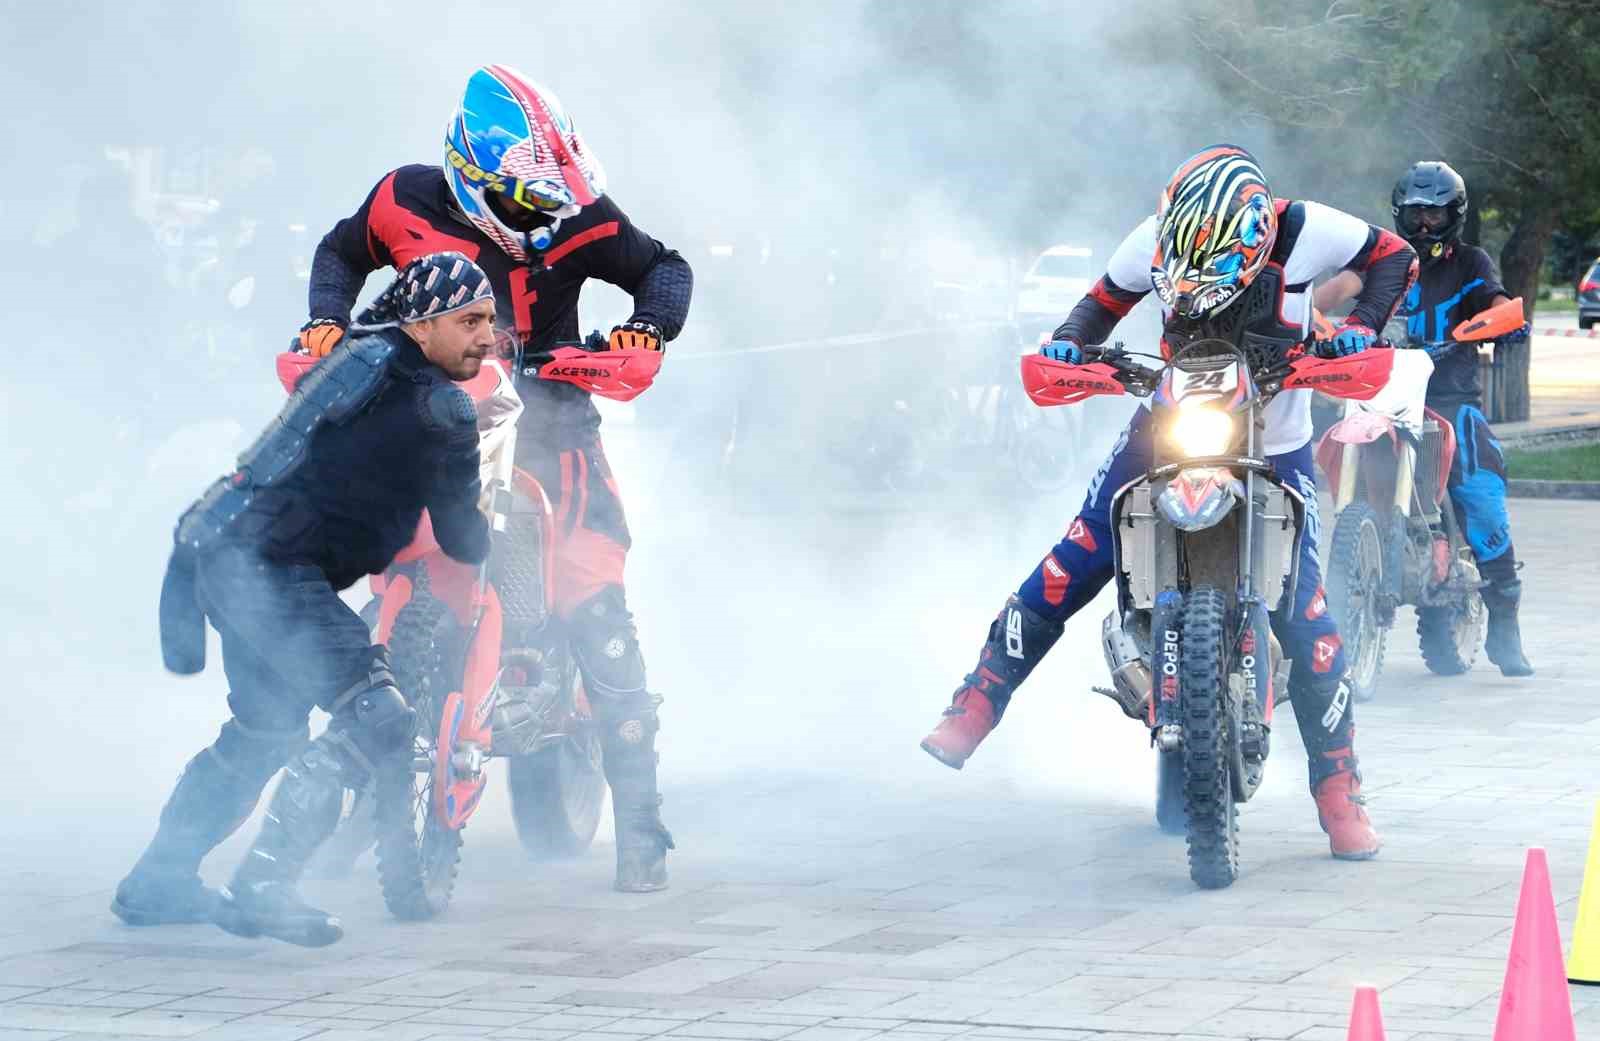 Şehrin Ortasında Nefes Kesen Motocross Gösterisi